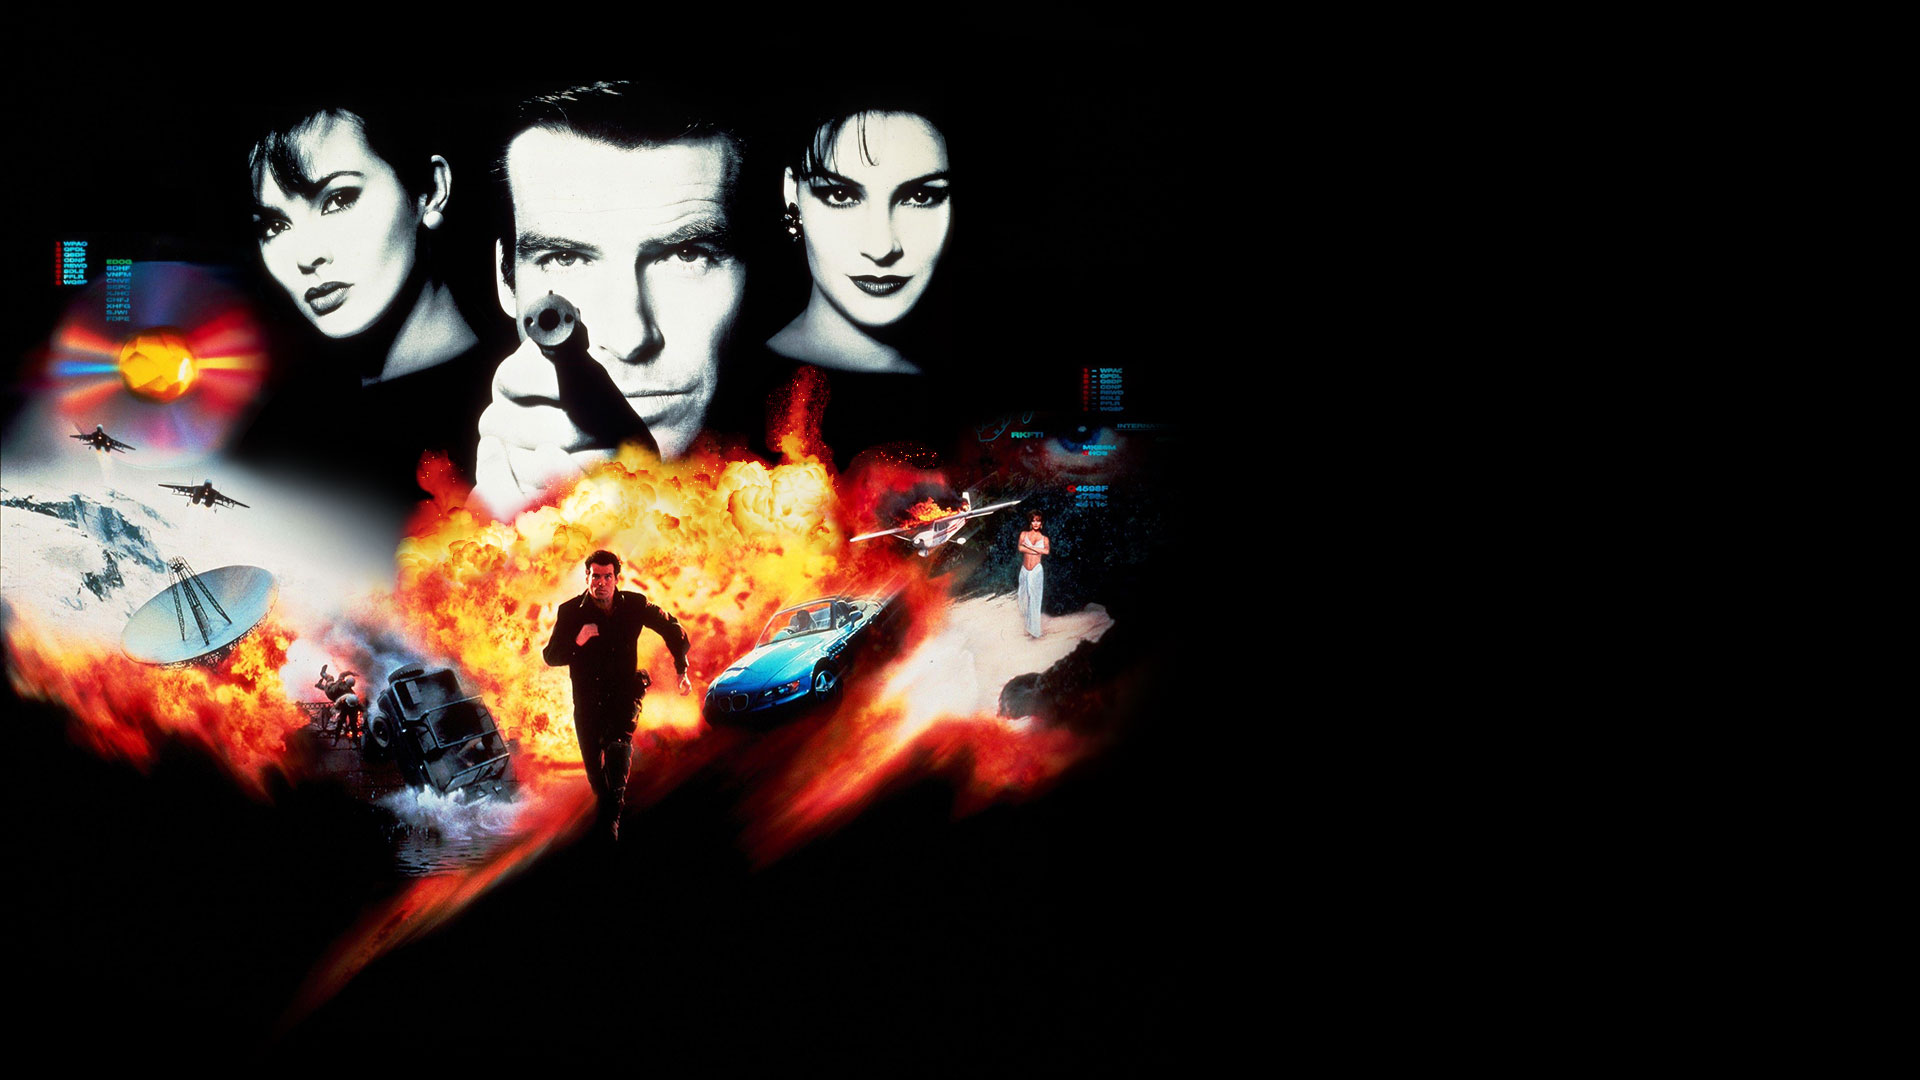 Egy kollázs a Goldeneye 007 jeleneteiből és karaktereiből.